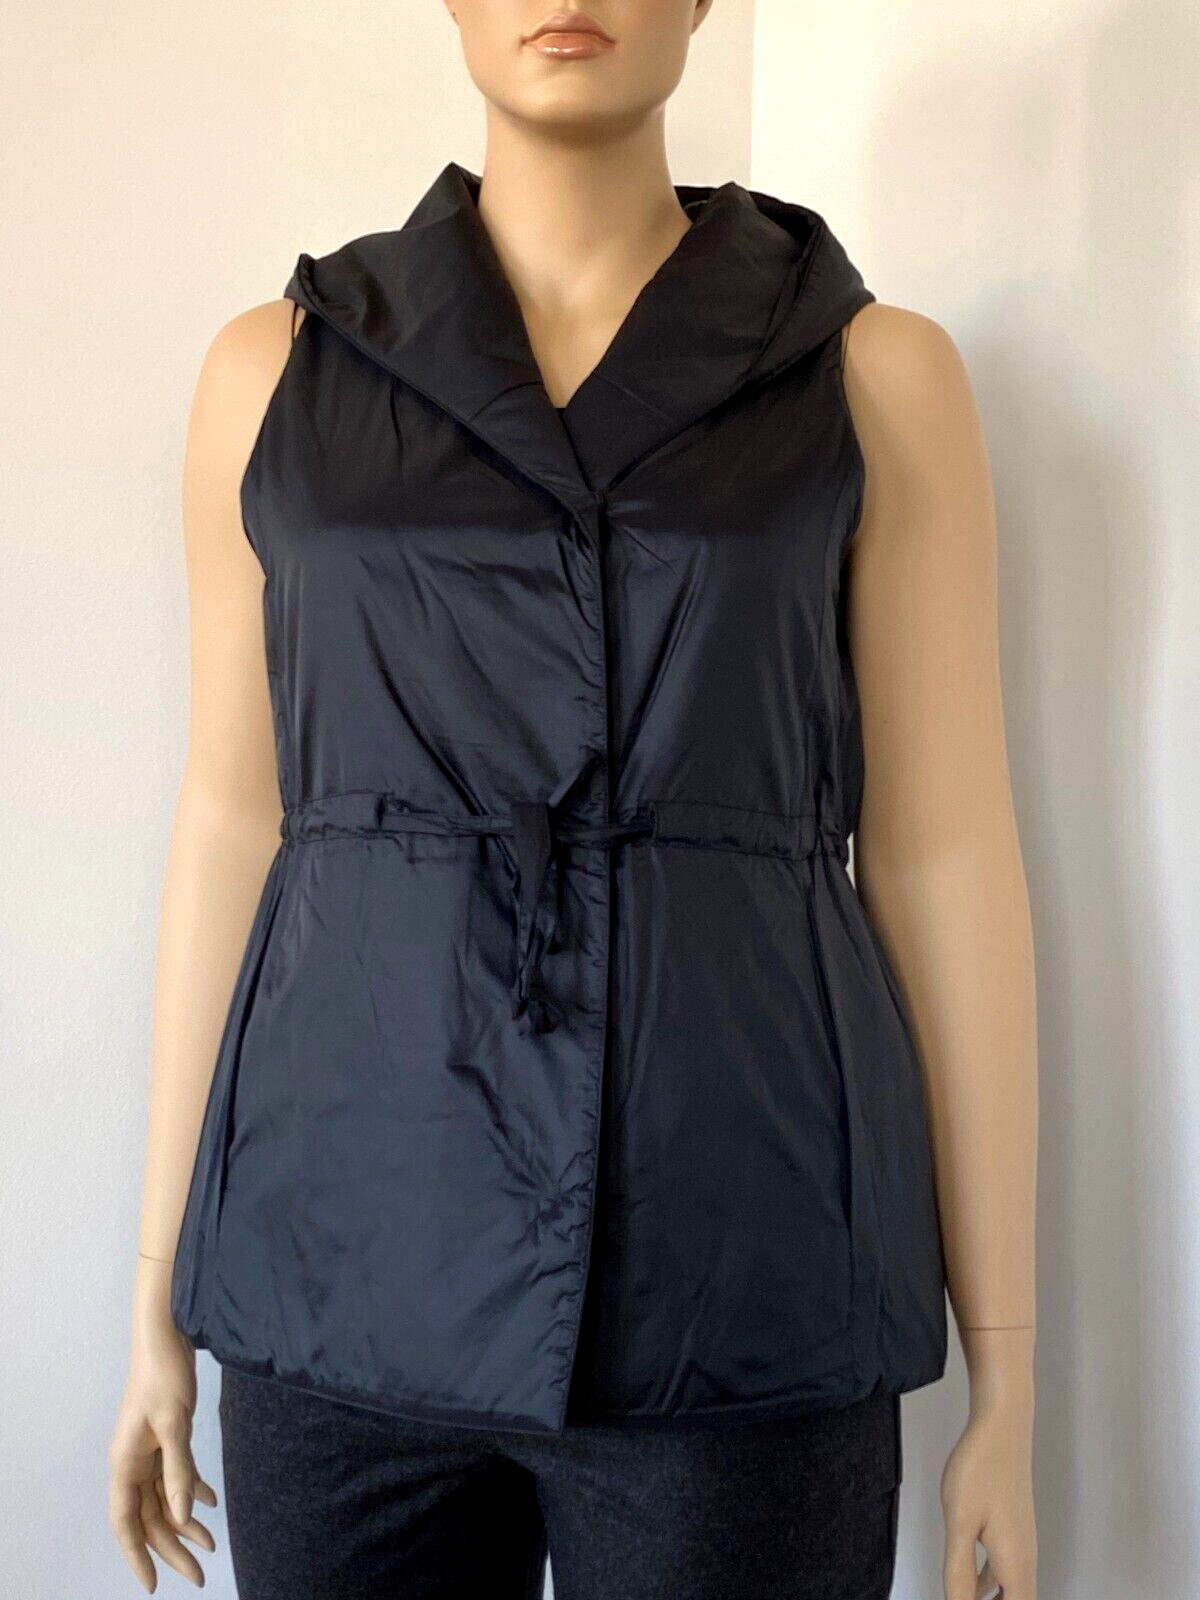 BNWT Eileen Fisher Eggshell Nylon Hooded Drawstring Puffer Vest, Black, L  248